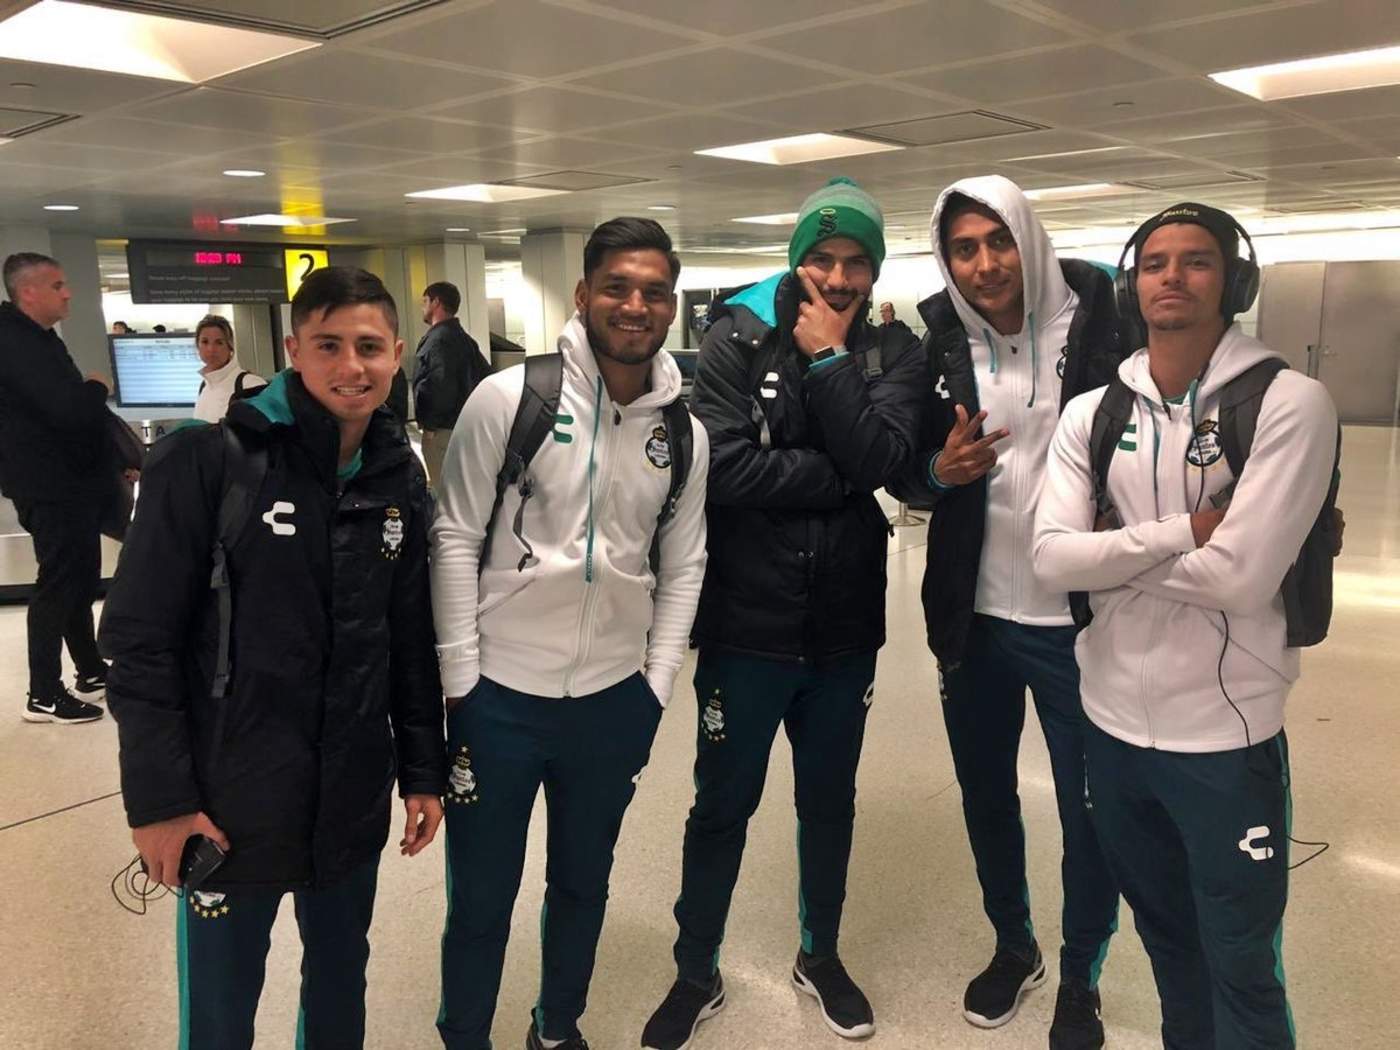 El mediocampista de Santos, Diego de Buen, publicó una foto junto a sus compañeros mientras esperaban para poder volar a NY. (Especial)